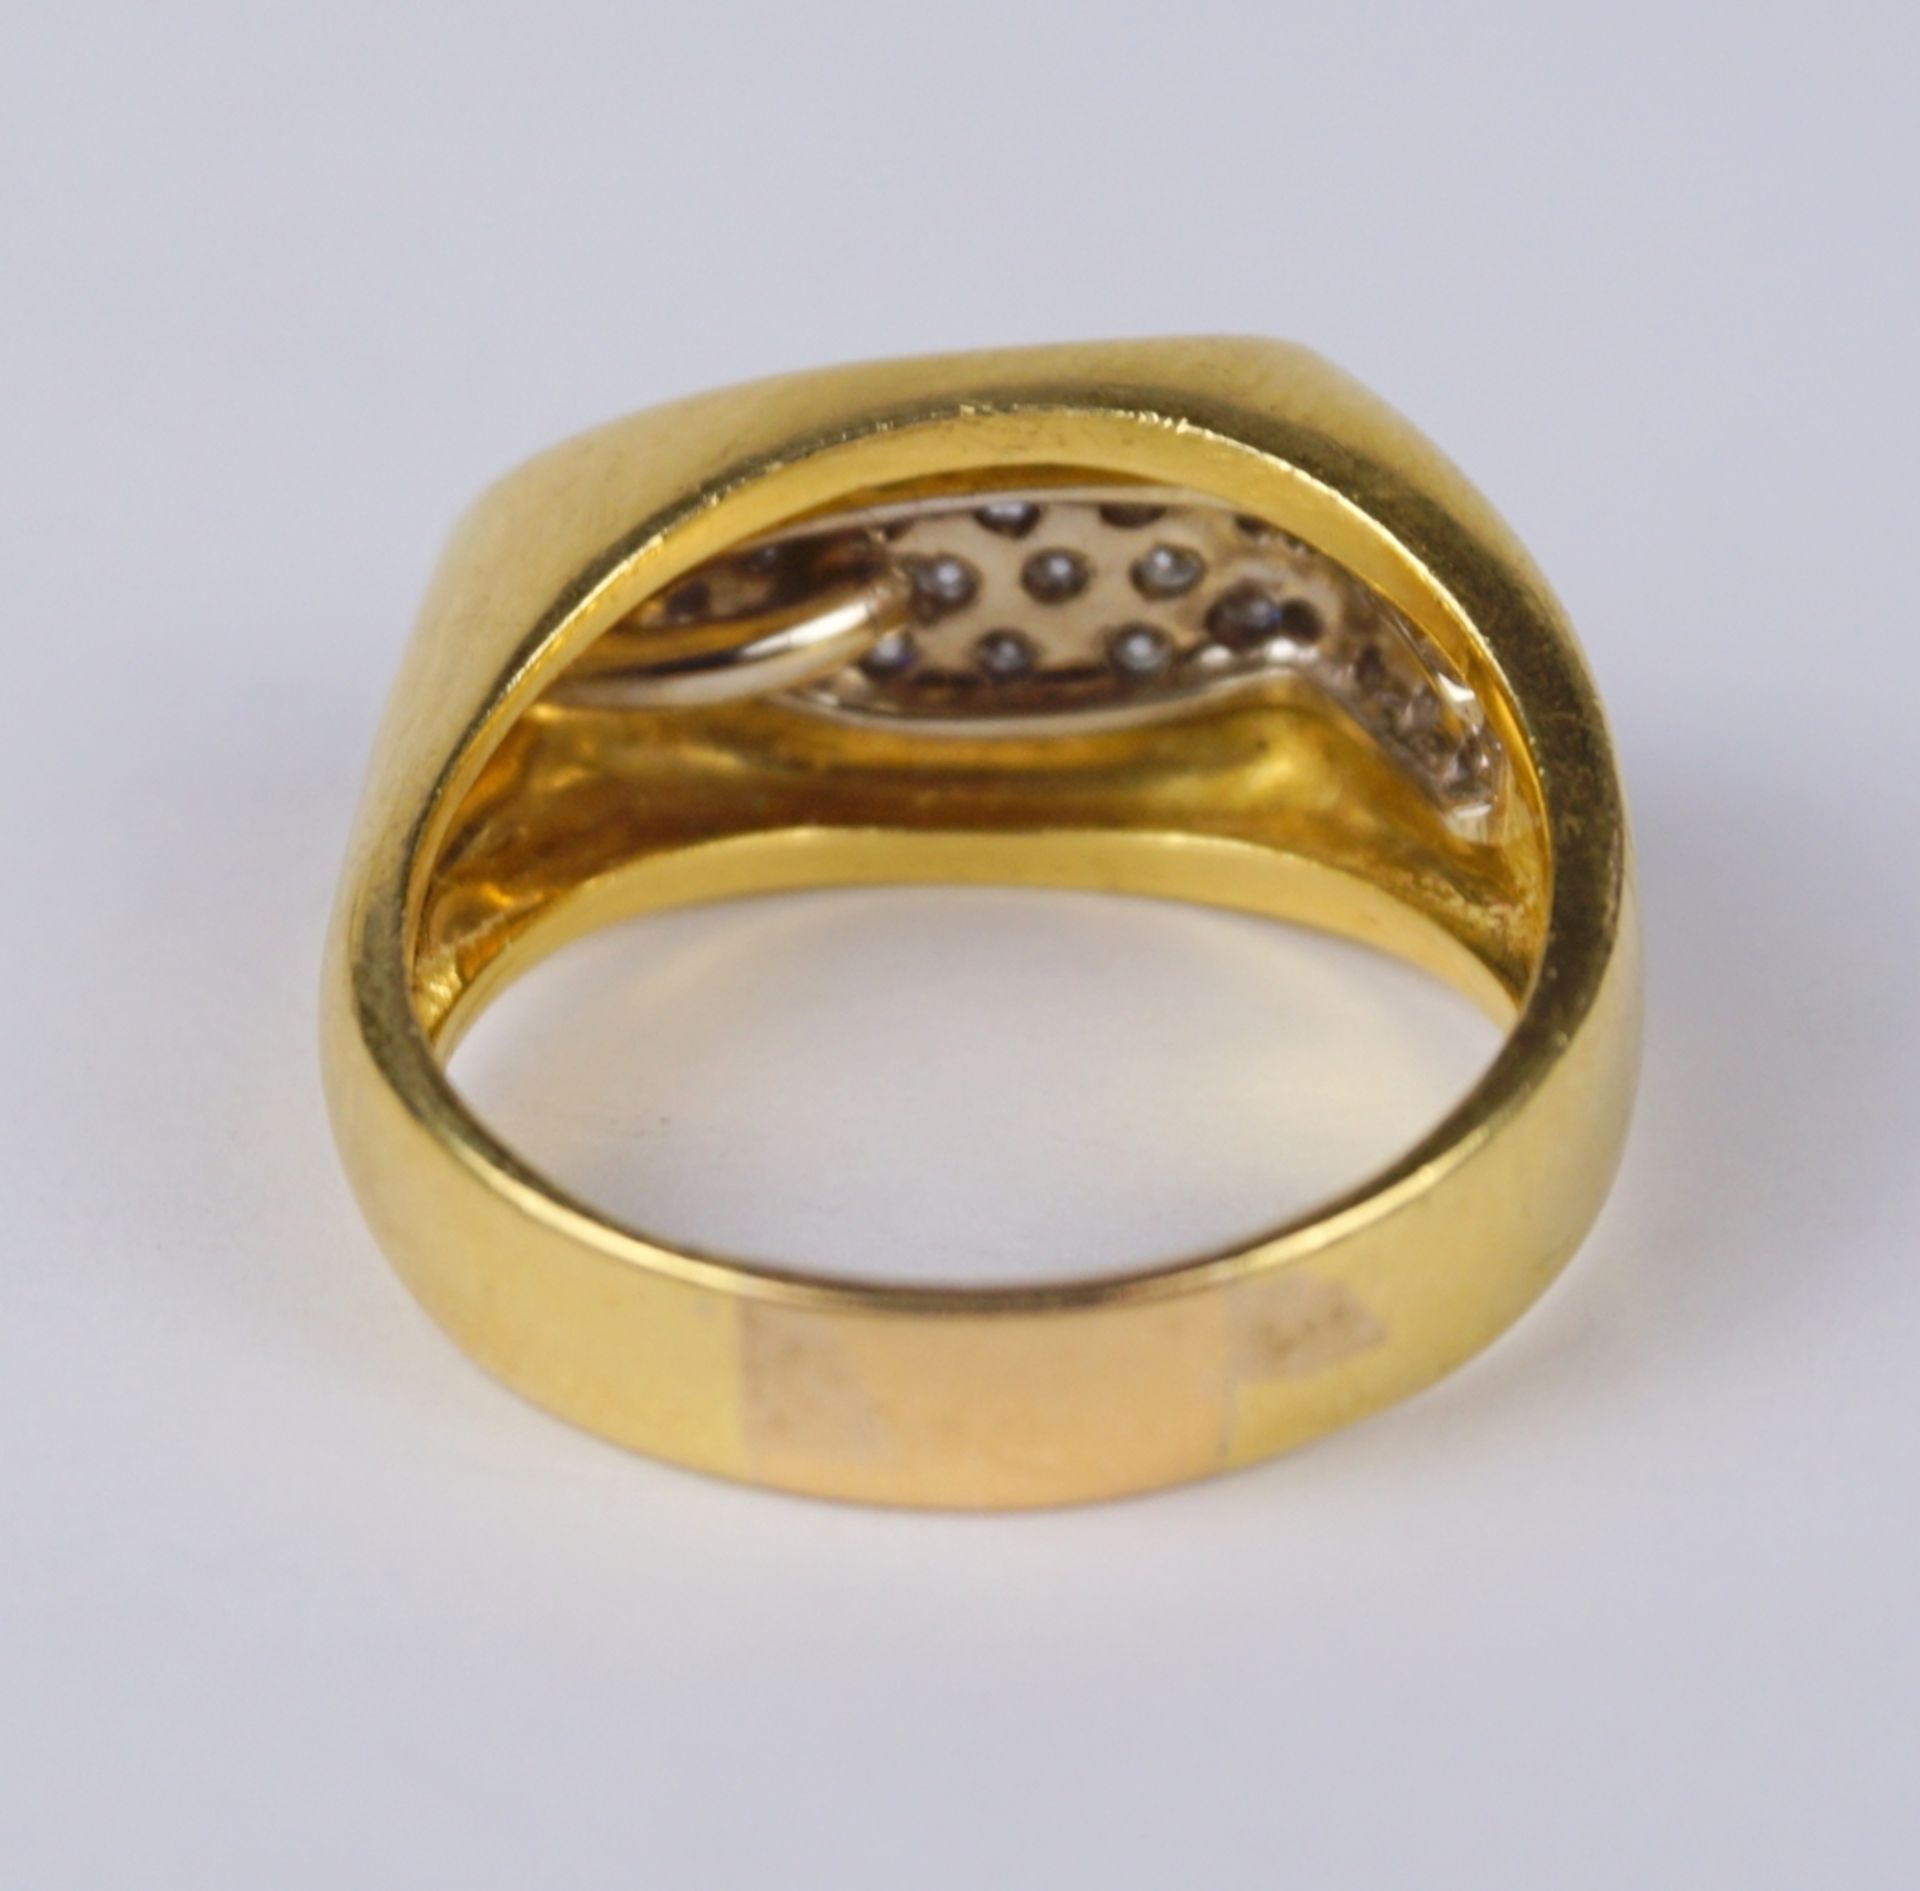 Brillant-Ring, 750er Weiß- und Gelbgold, Gew.10,68g, mit Wertgutachten - Image 2 of 2